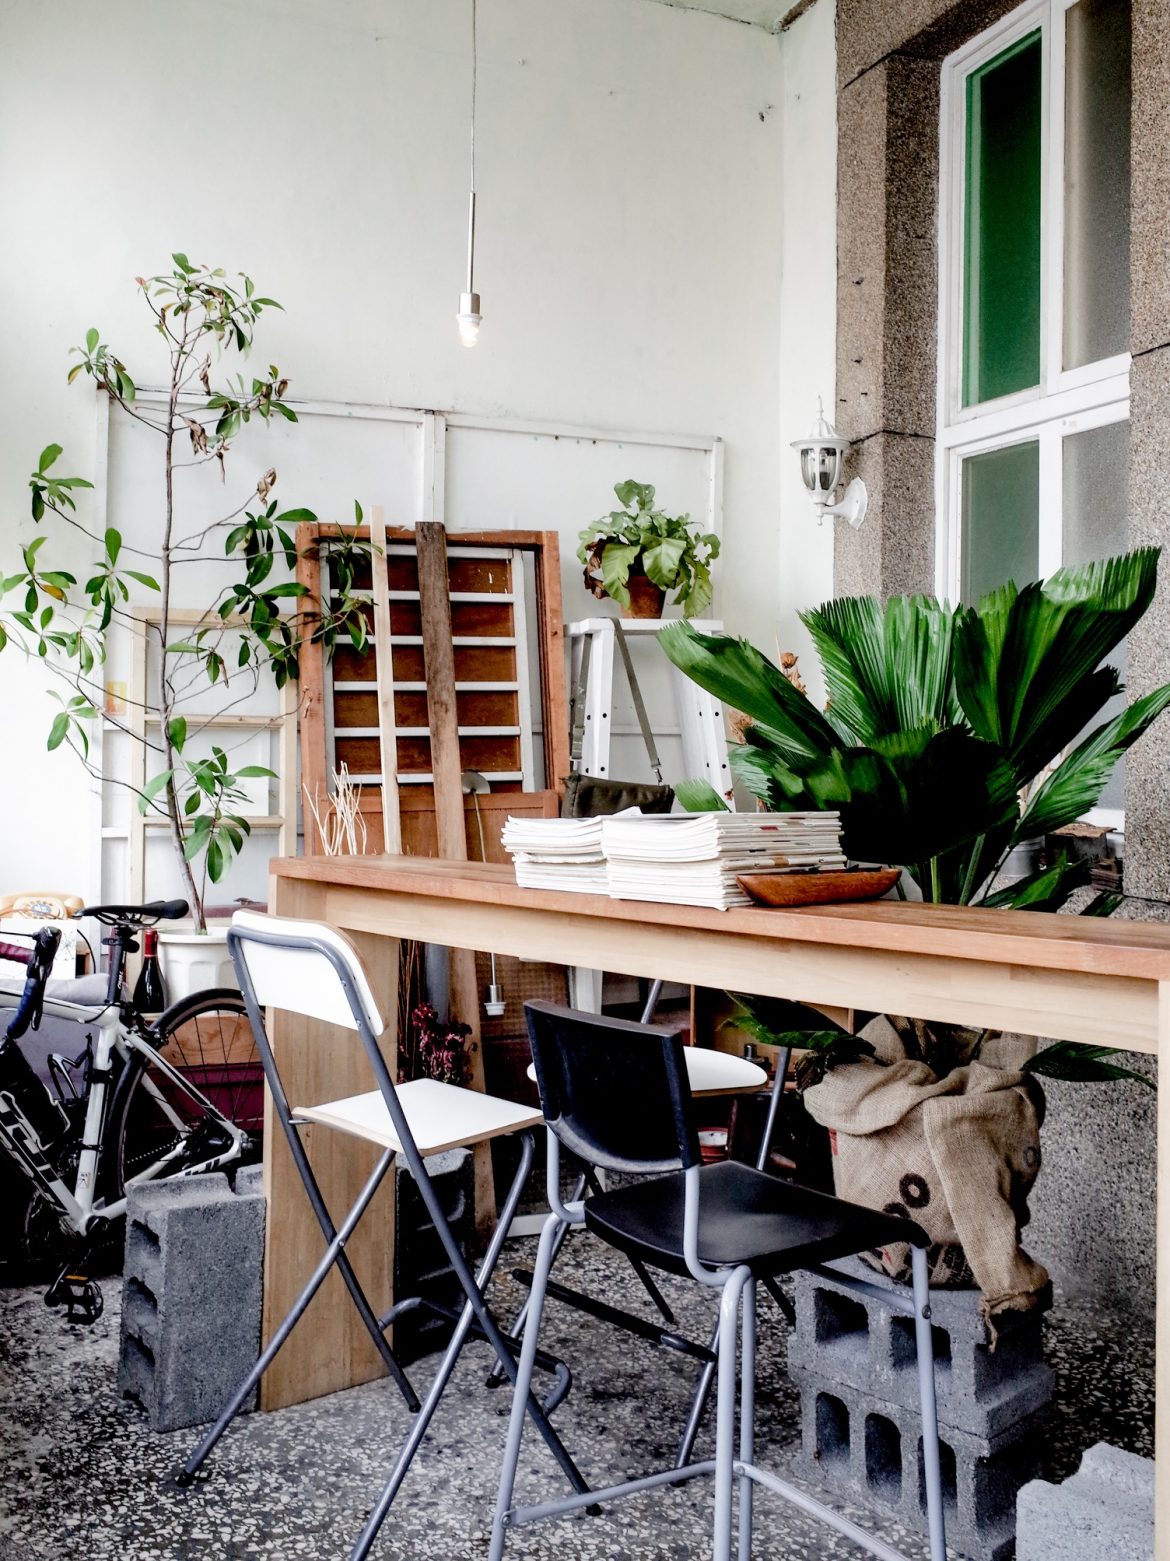 前院的小小座檯，一旁堆疊著木窗與工具，在大量綠色植栽環繞下，竟也有種庭院工作室般的舒適感。